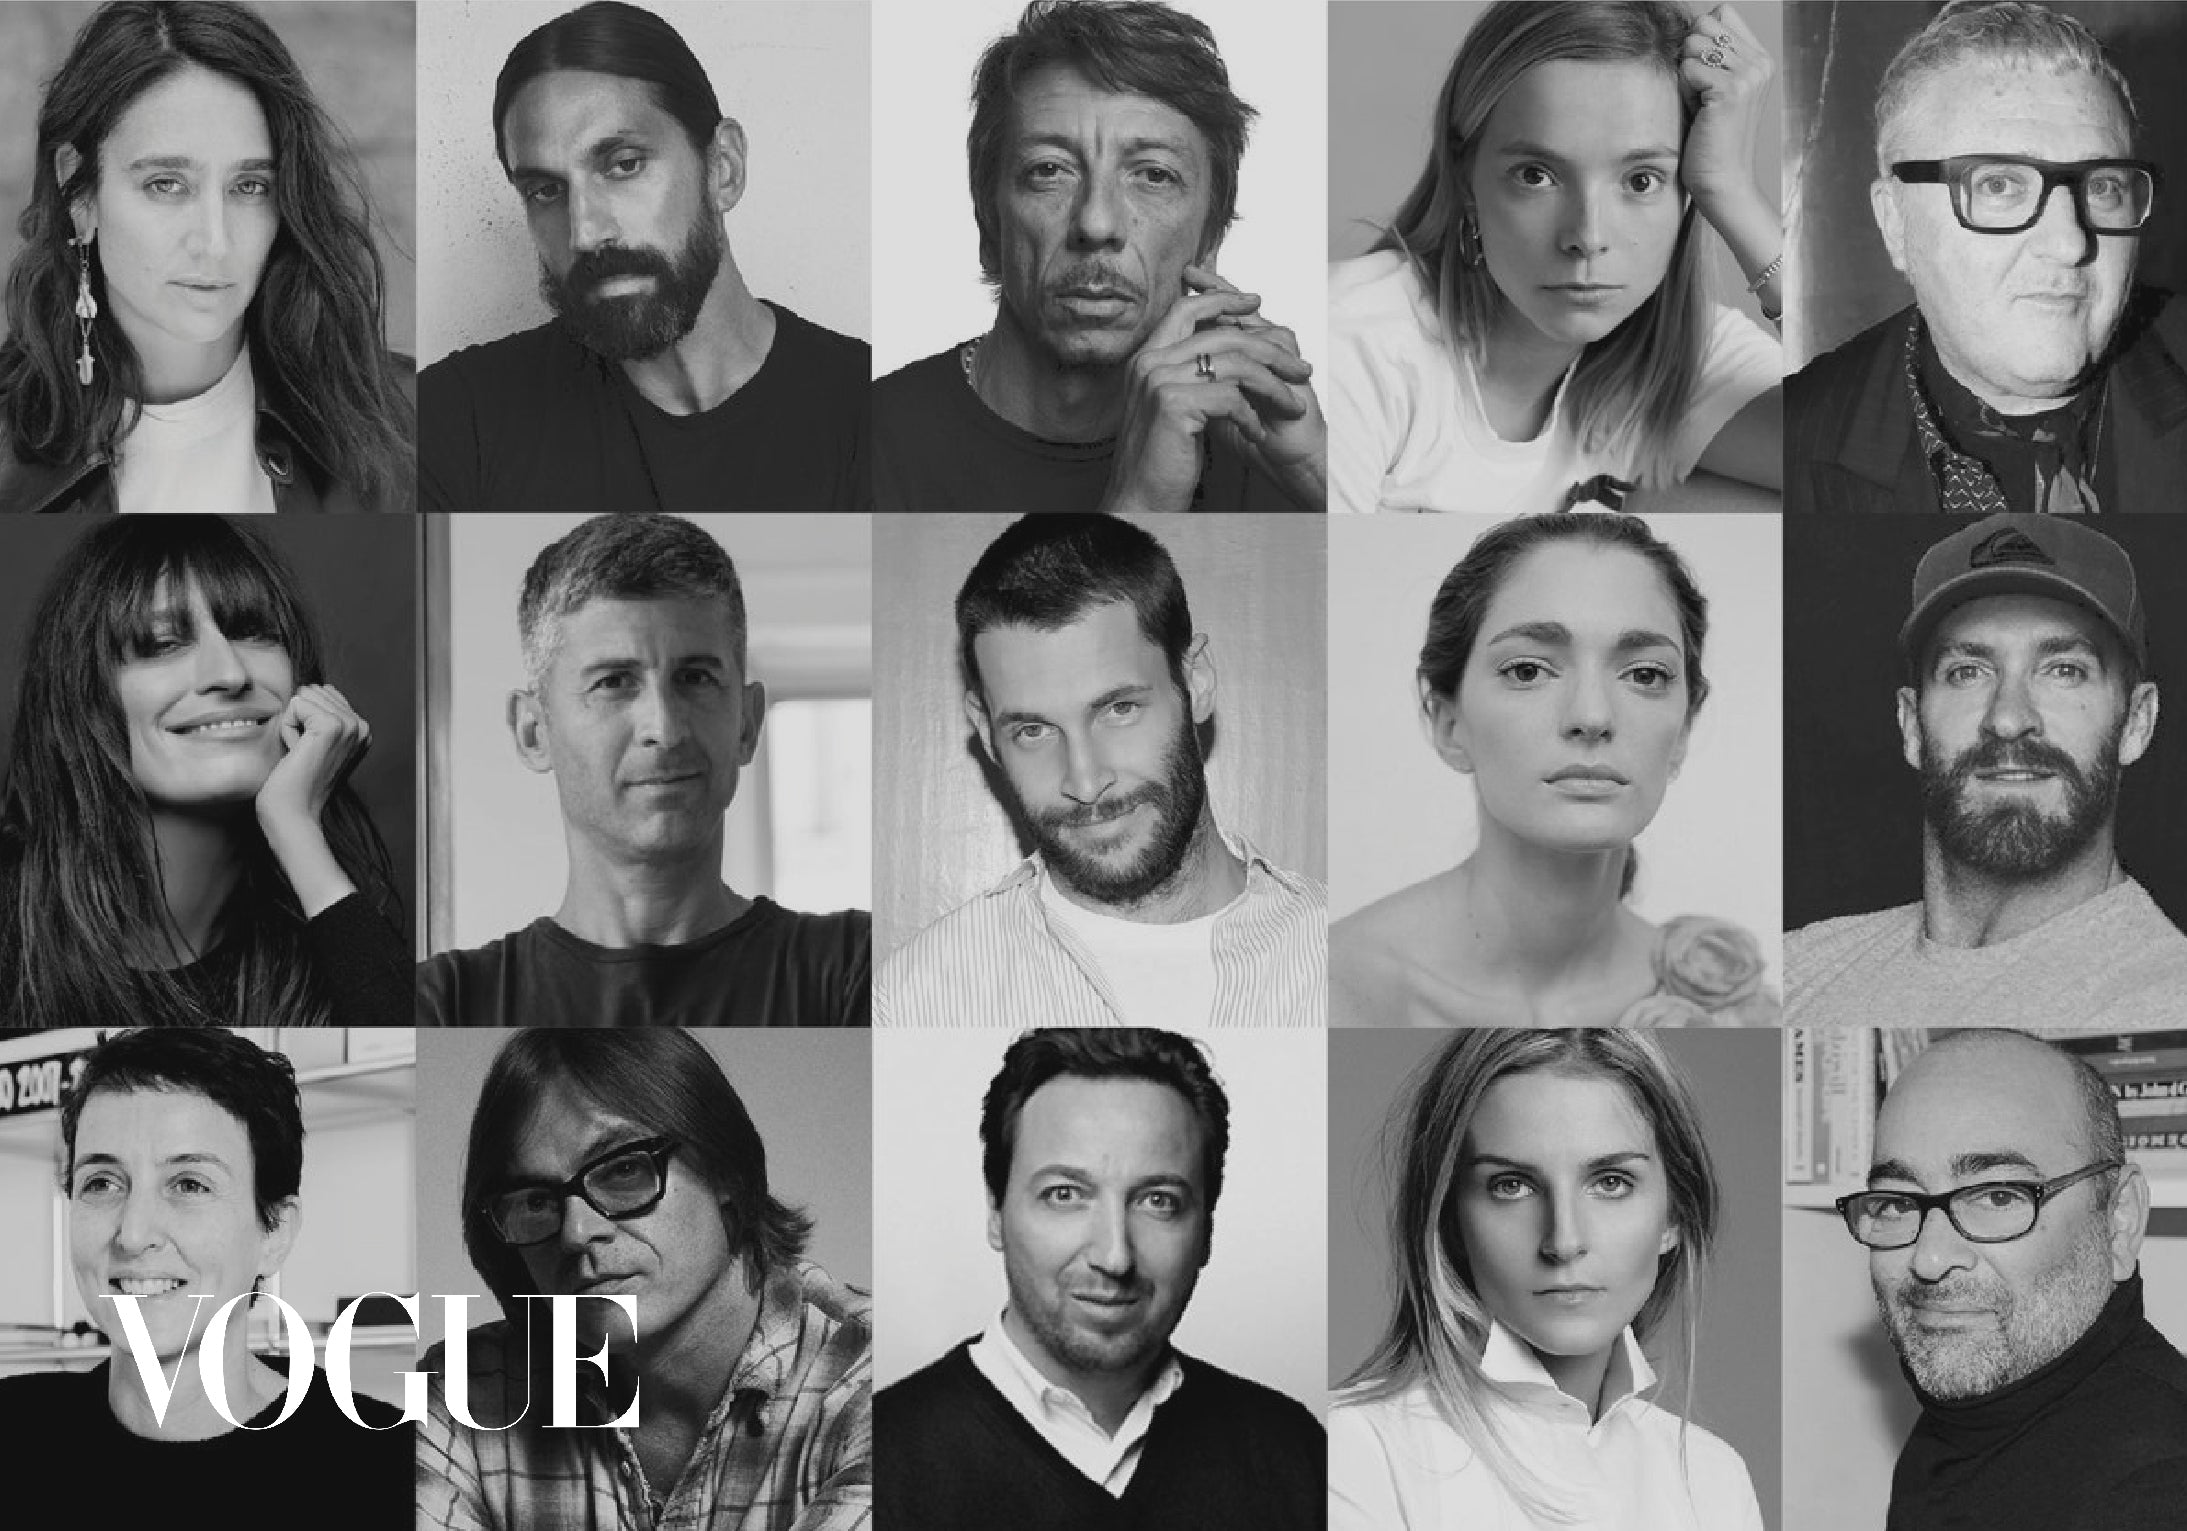 Vogue Spain - Subasta benéfica para luchar contra el Covid-19